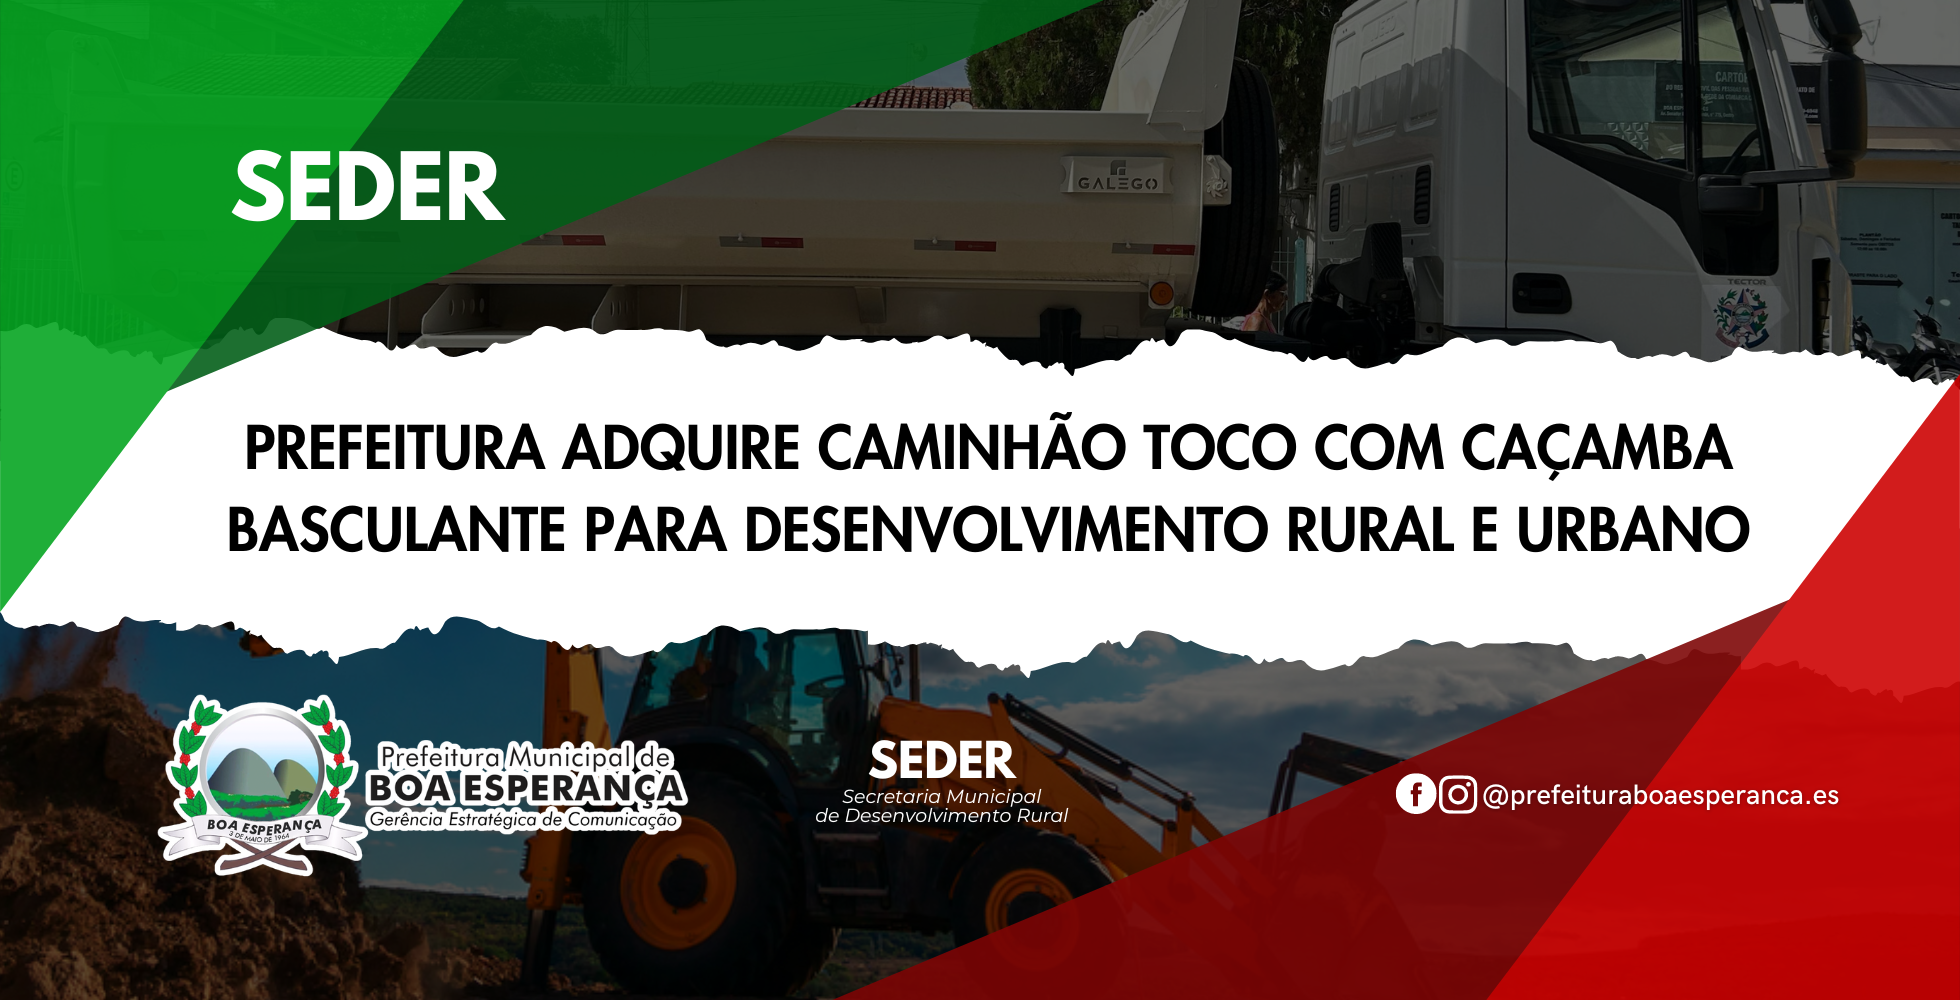 Prefeitura Municipal de Boa Esperança adquire Caminhão Toco com Caçamba Basculante para Fortalecer Setores de Desenvolvimento Rural e Urbano